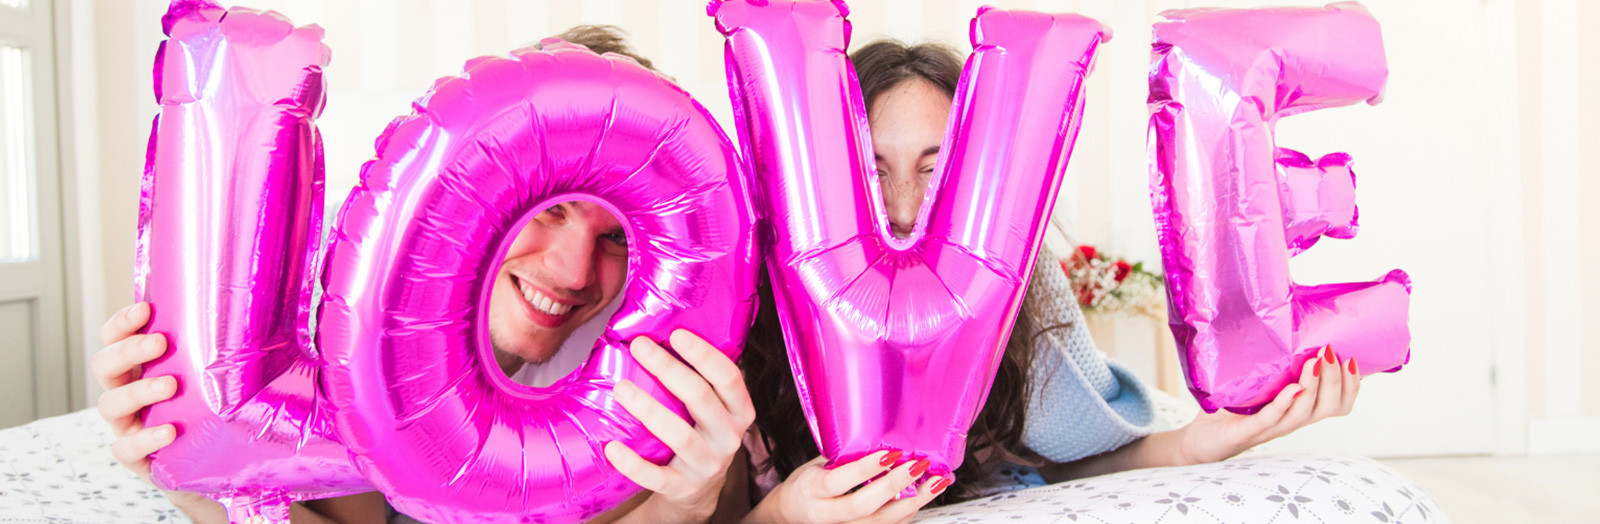 Ballon en aluminium - Lettres Ballon Feuille Gonflable pour Votre  célébration d' anniversaire ou pour Votre Mariage d'hélium Lettre Gold,16  inch